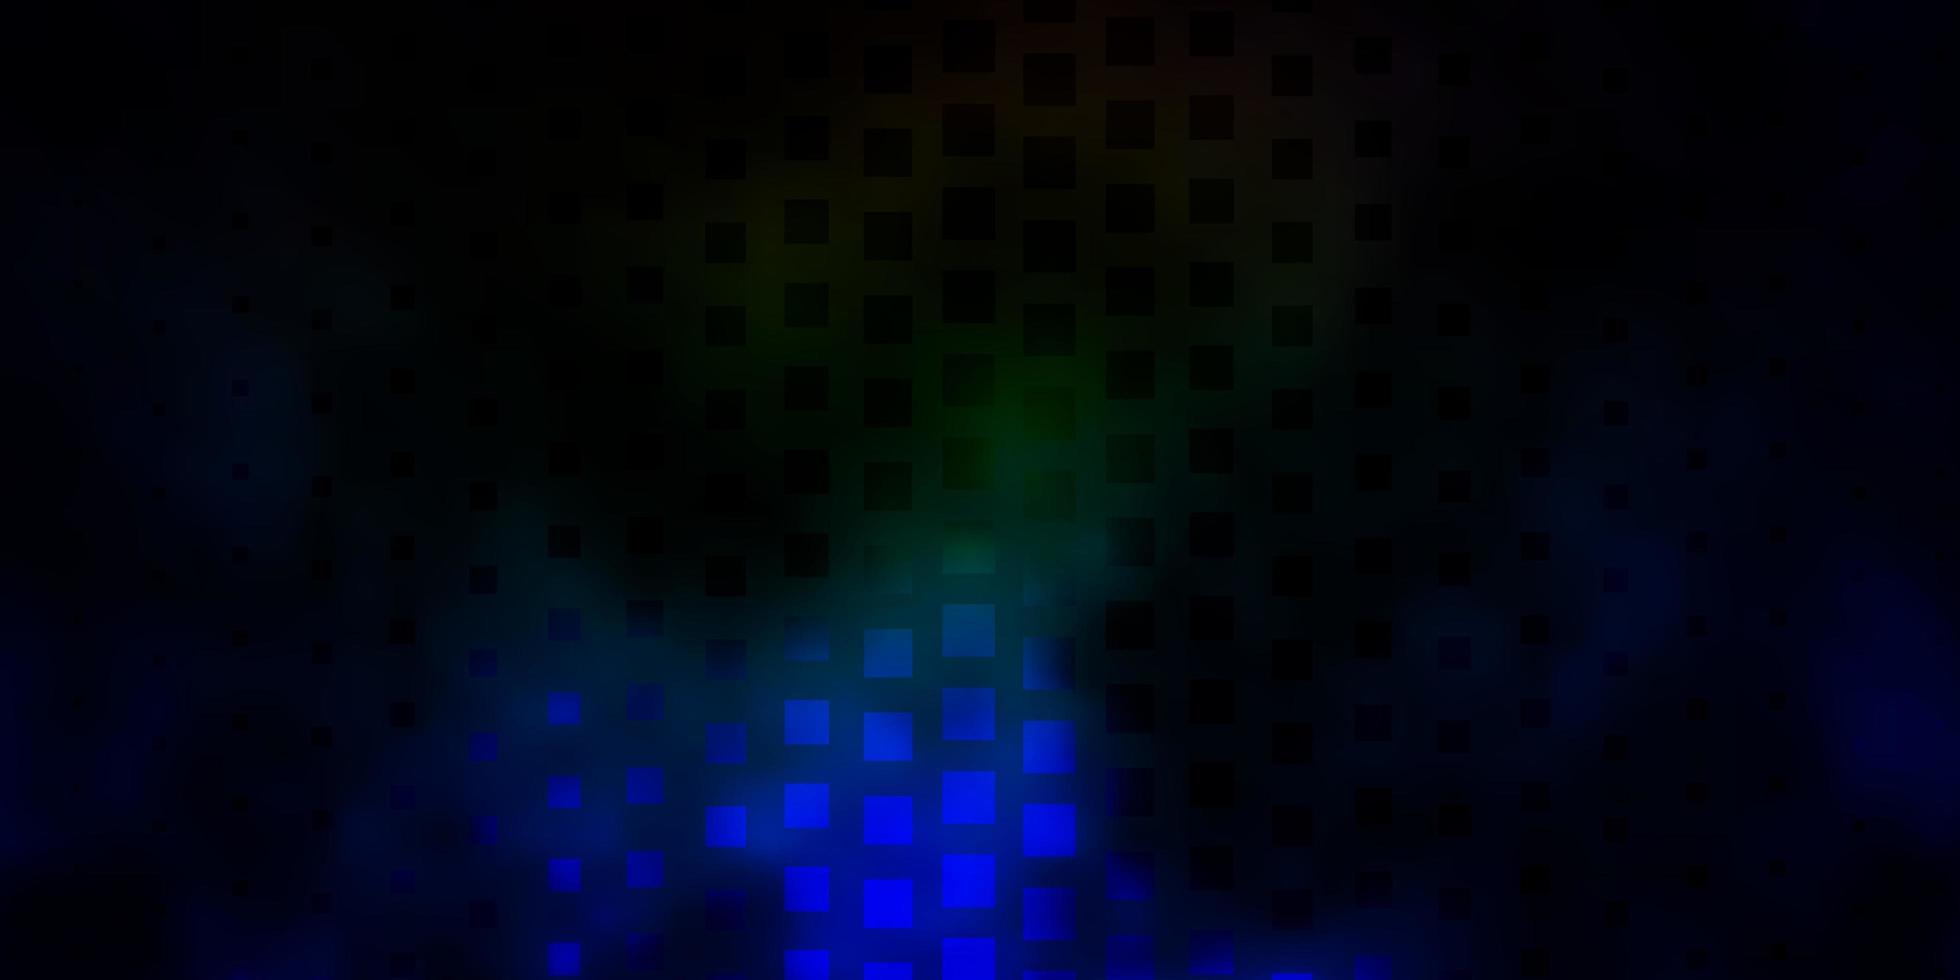 Telón de fondo de vector multicolor oscuro con rectángulos.